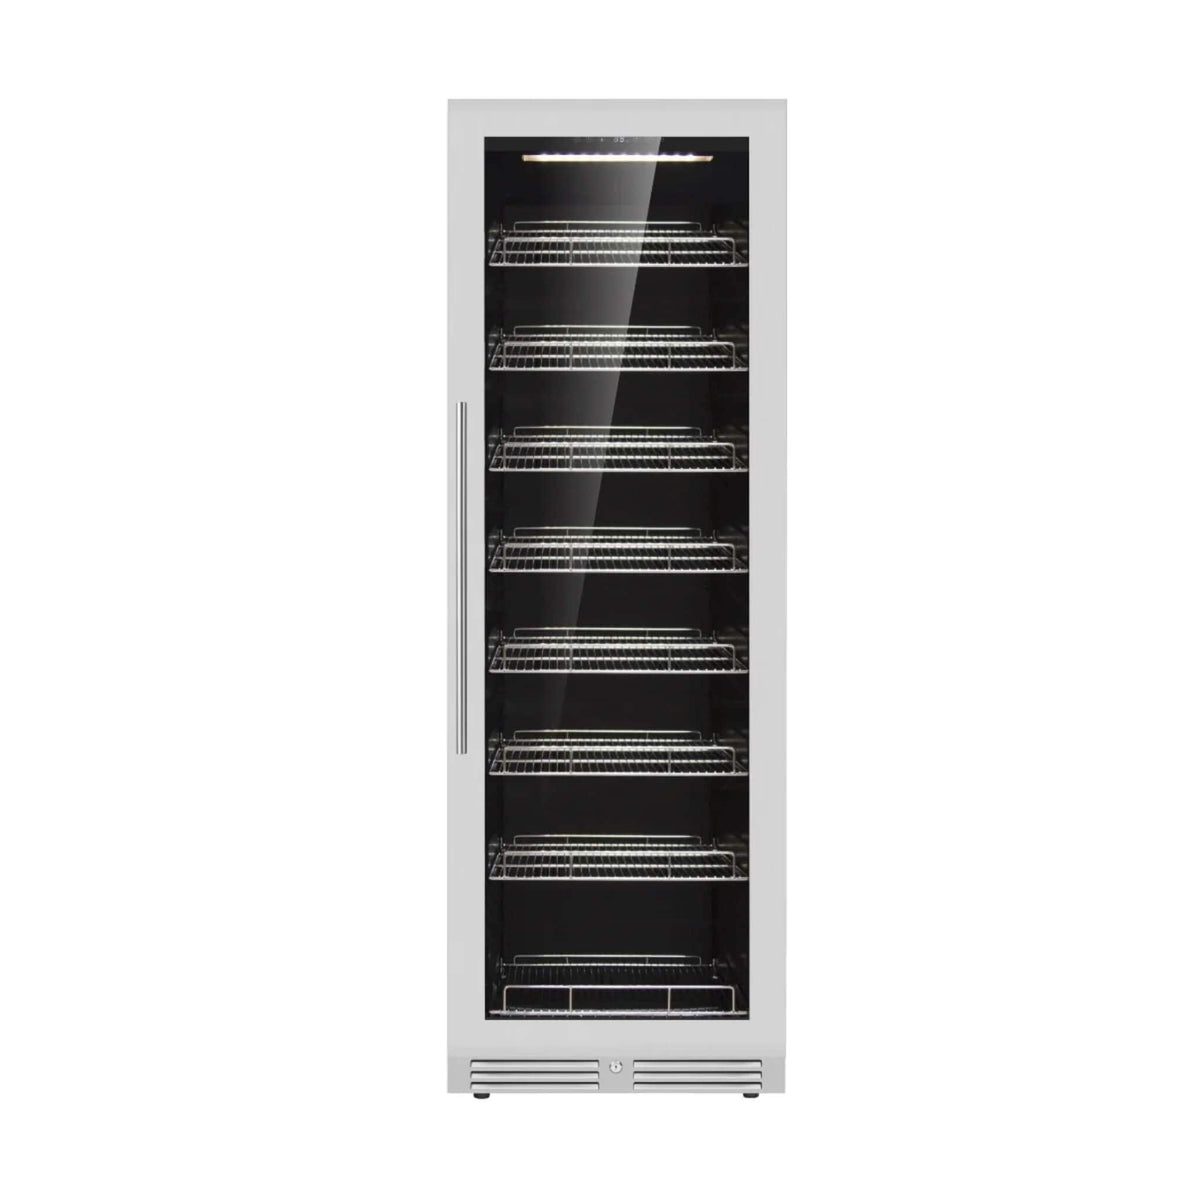 Kingsbottle Large Beverage Refrigerator With Low-E Glass Door